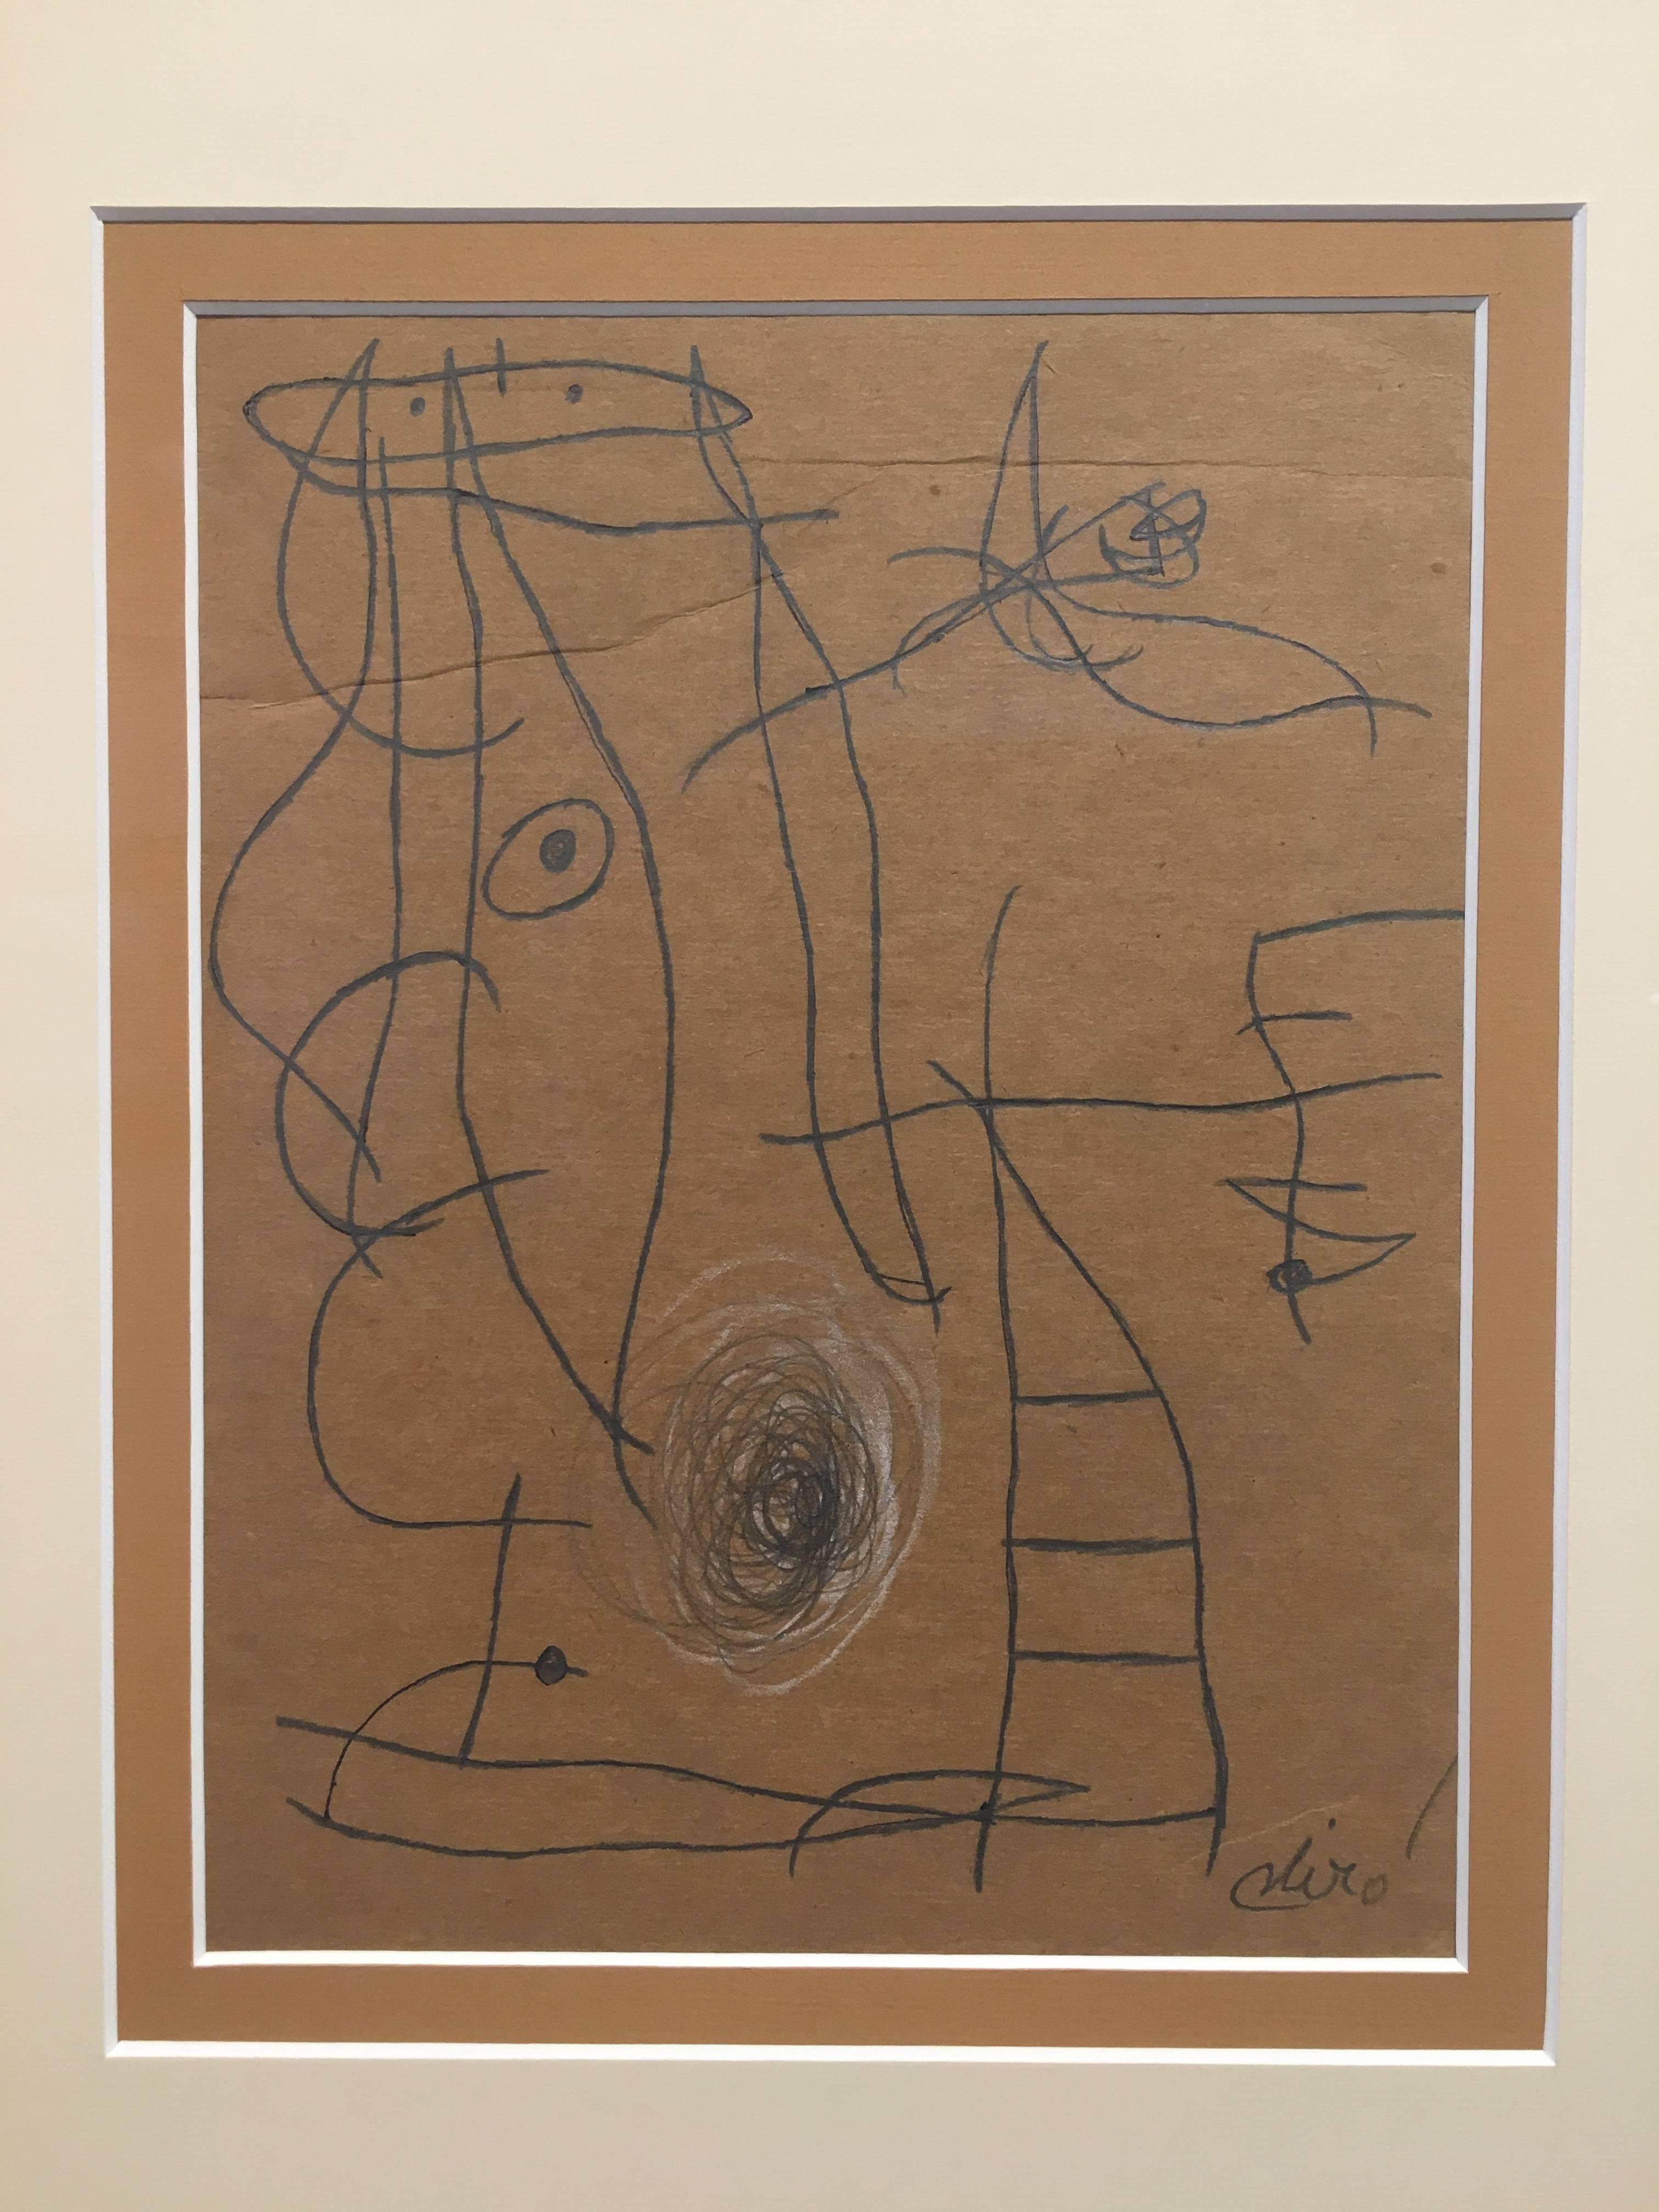 FEMME , OISEAUX - Art by Joan Miró